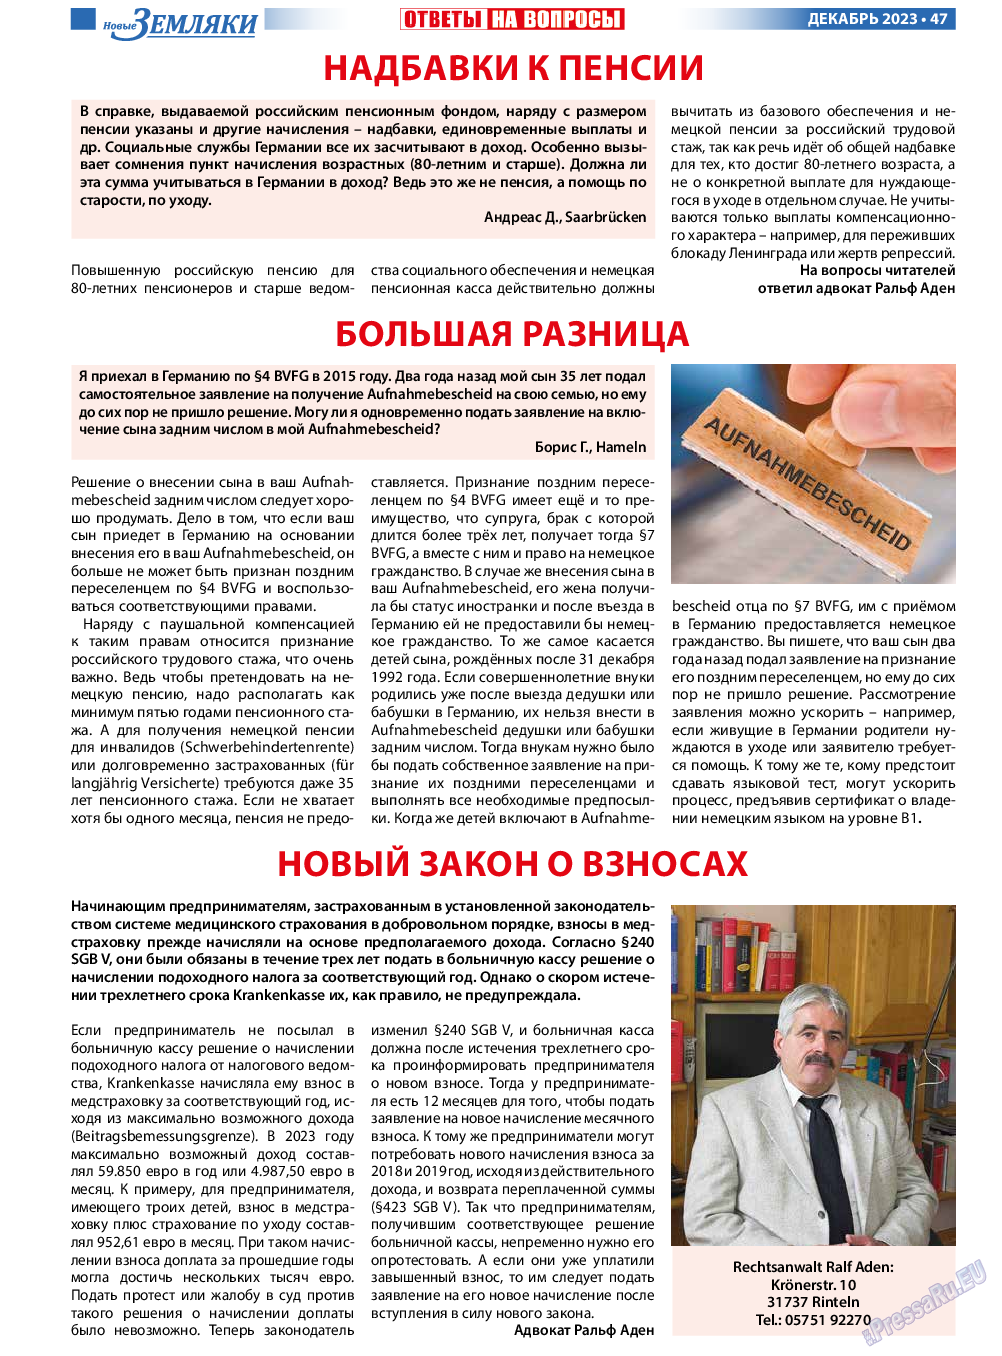 Новые Земляки, газета. 2023 №12 стр.47